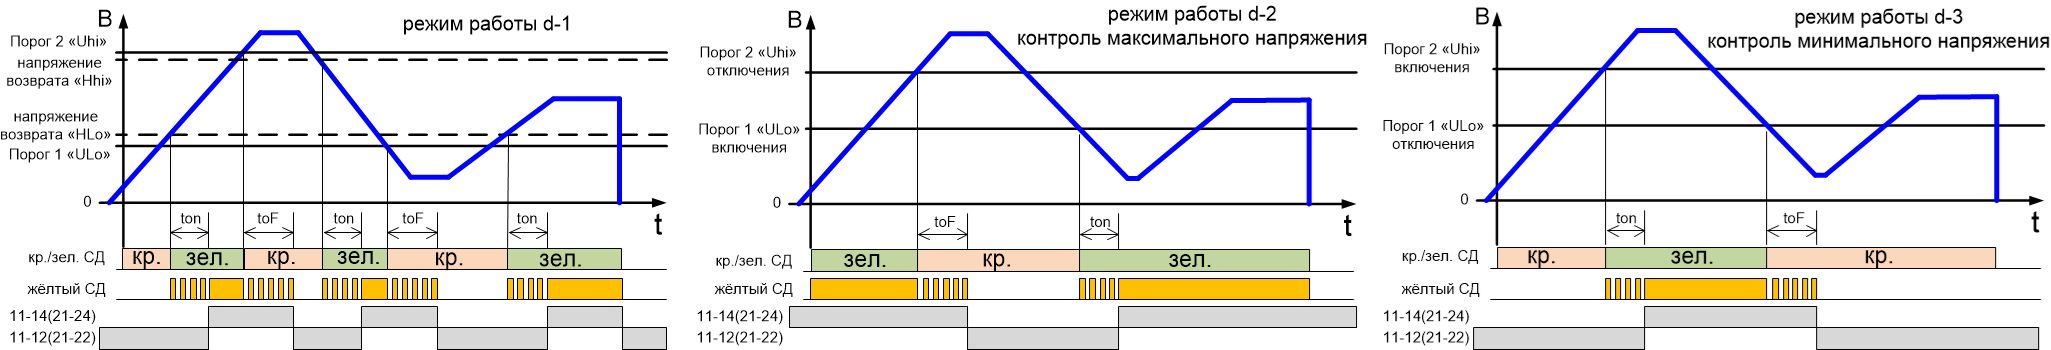 Диаграмма работы РКН-1МЦ